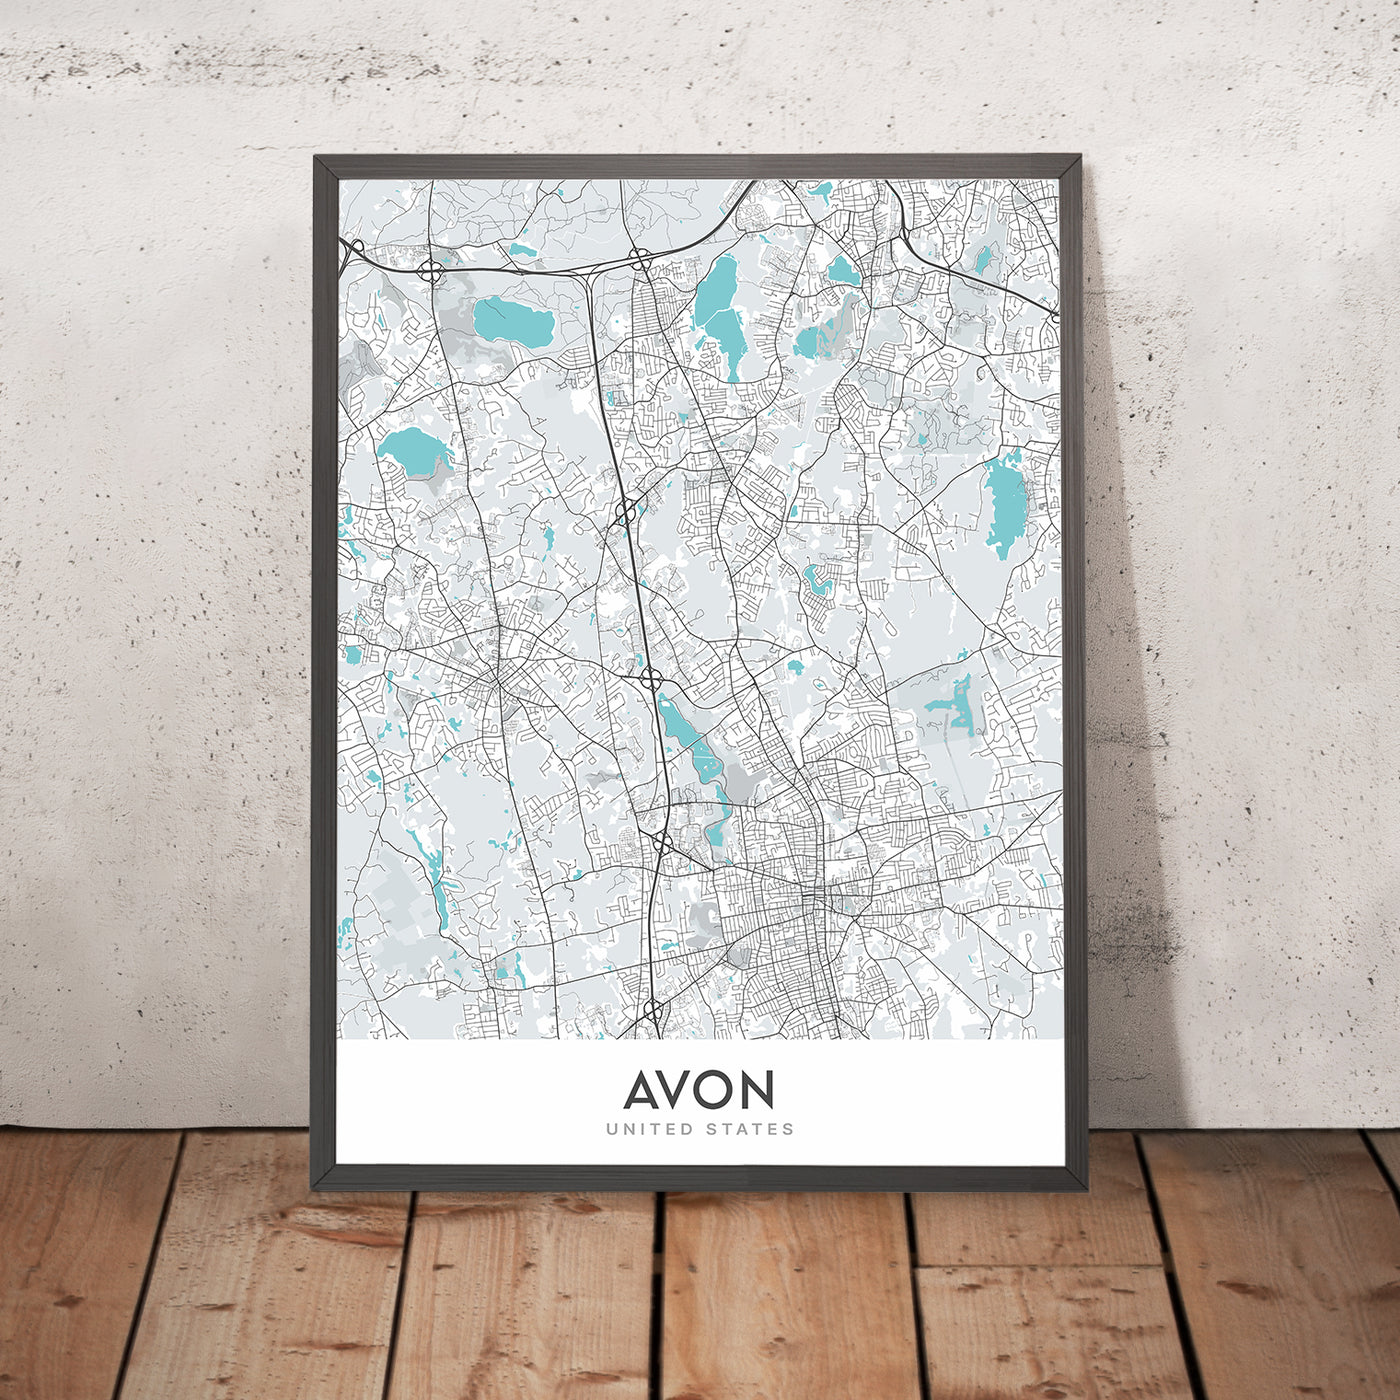 Plan de la ville moderne d'Avon, MA : hôtel de ville d'Avon, bibliothèque publique d'Avon, Christ Church, MA-28, MA-106